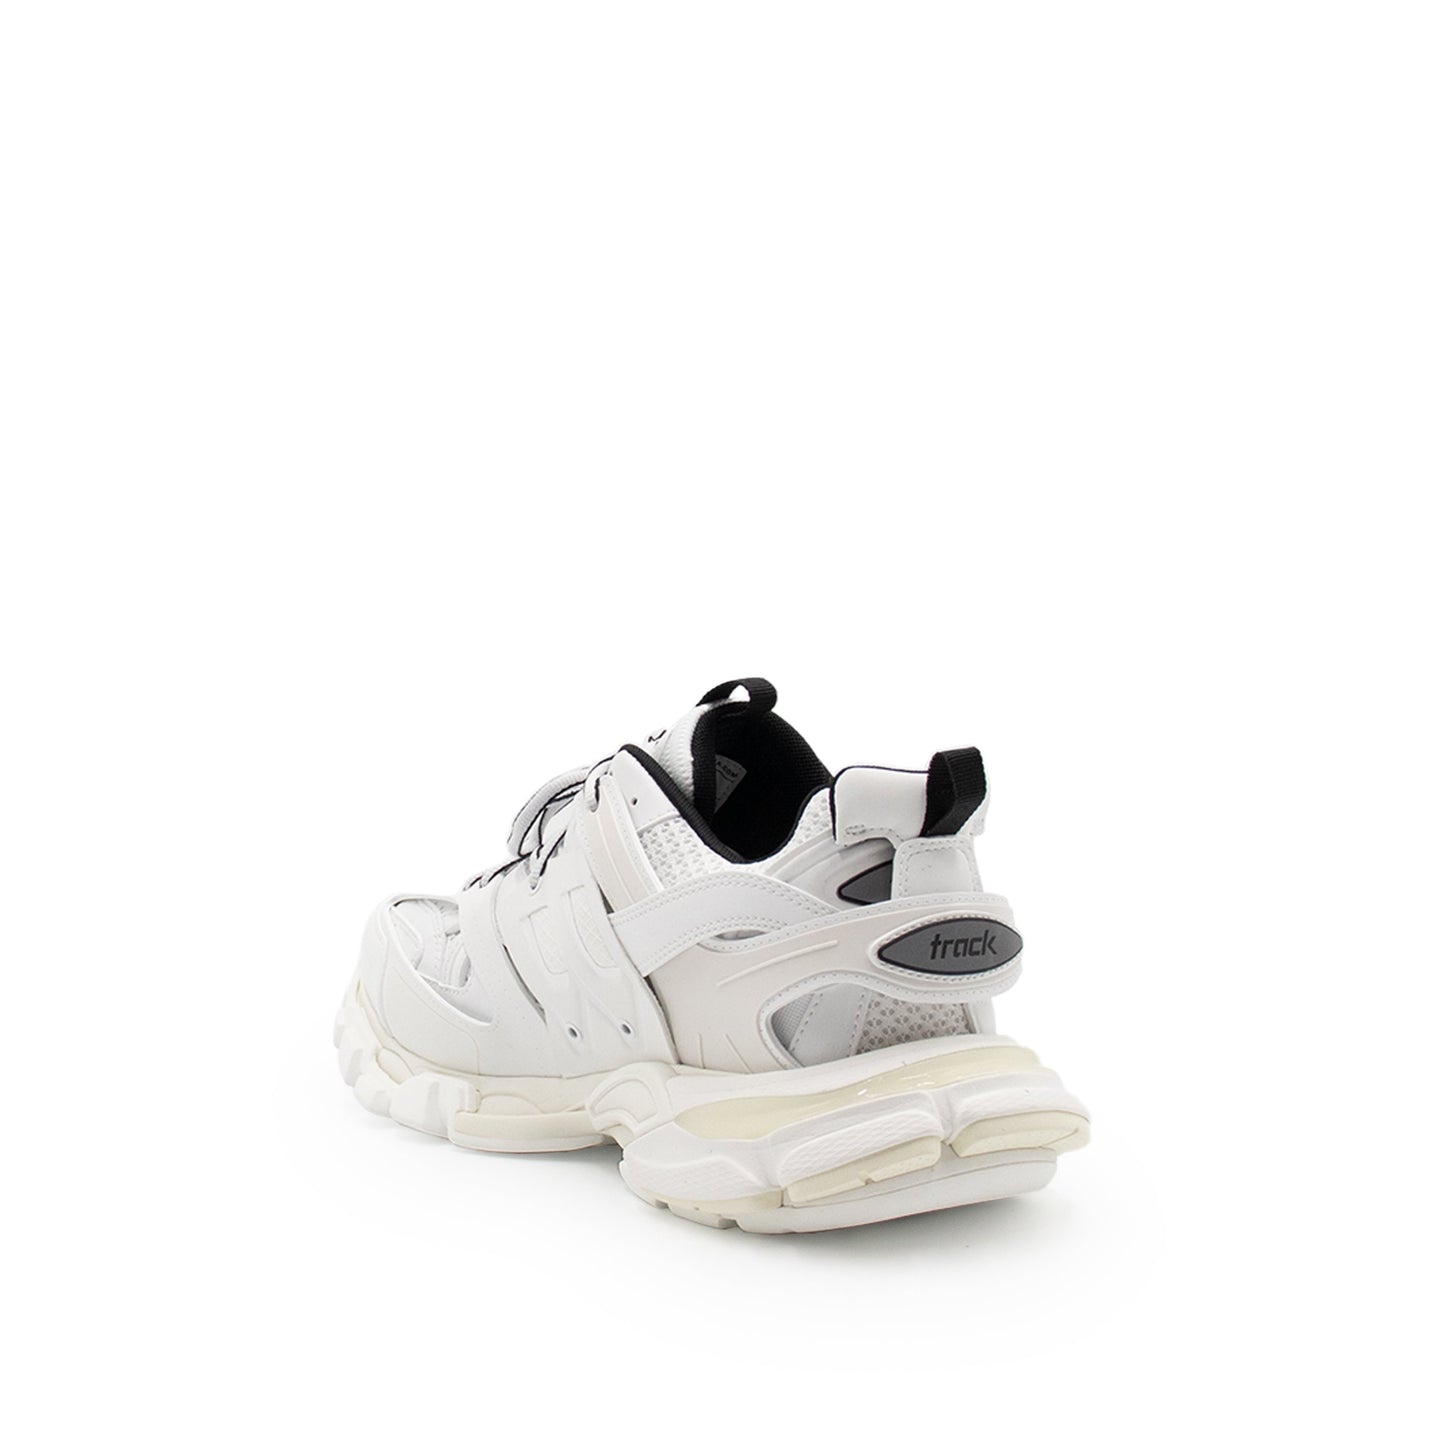 Track Sneaker in White/Black